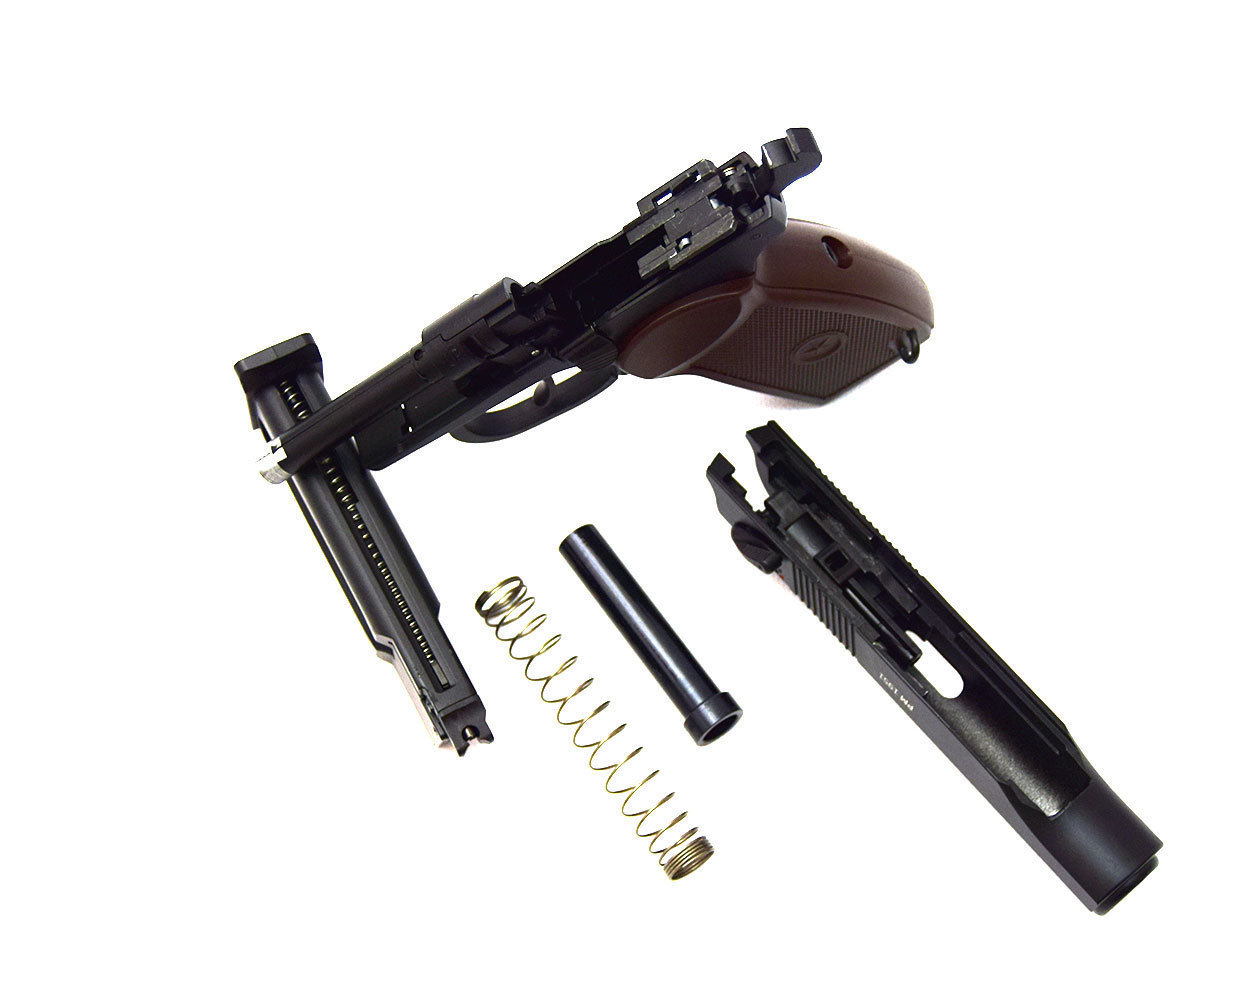 Пистолет пневматический PM 1951, к.4,5